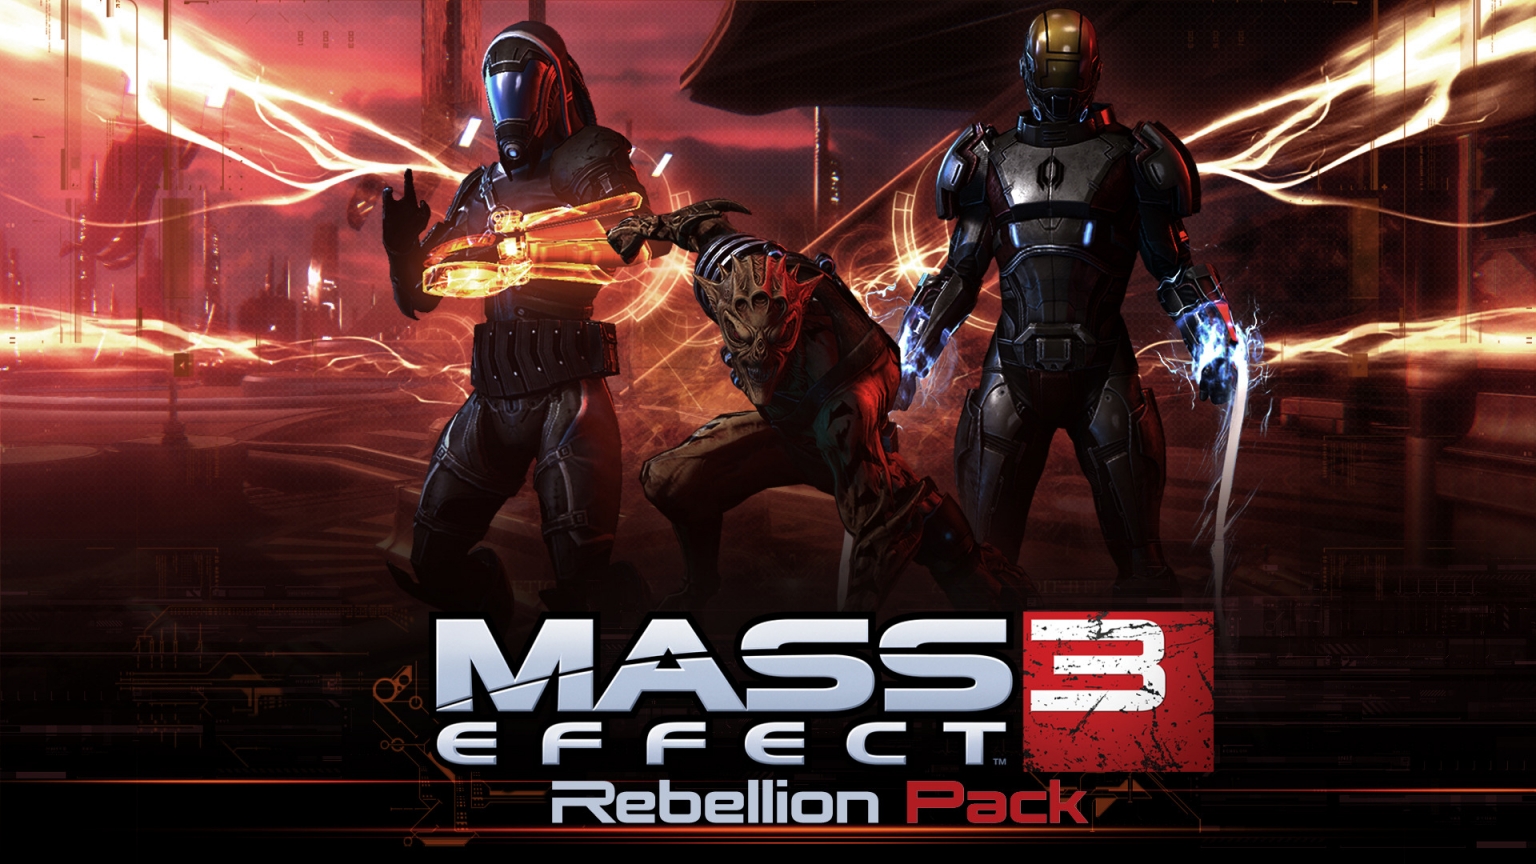 Mass Effect 3 Rebellion Pack for 1536 x 864 HDTV resolution